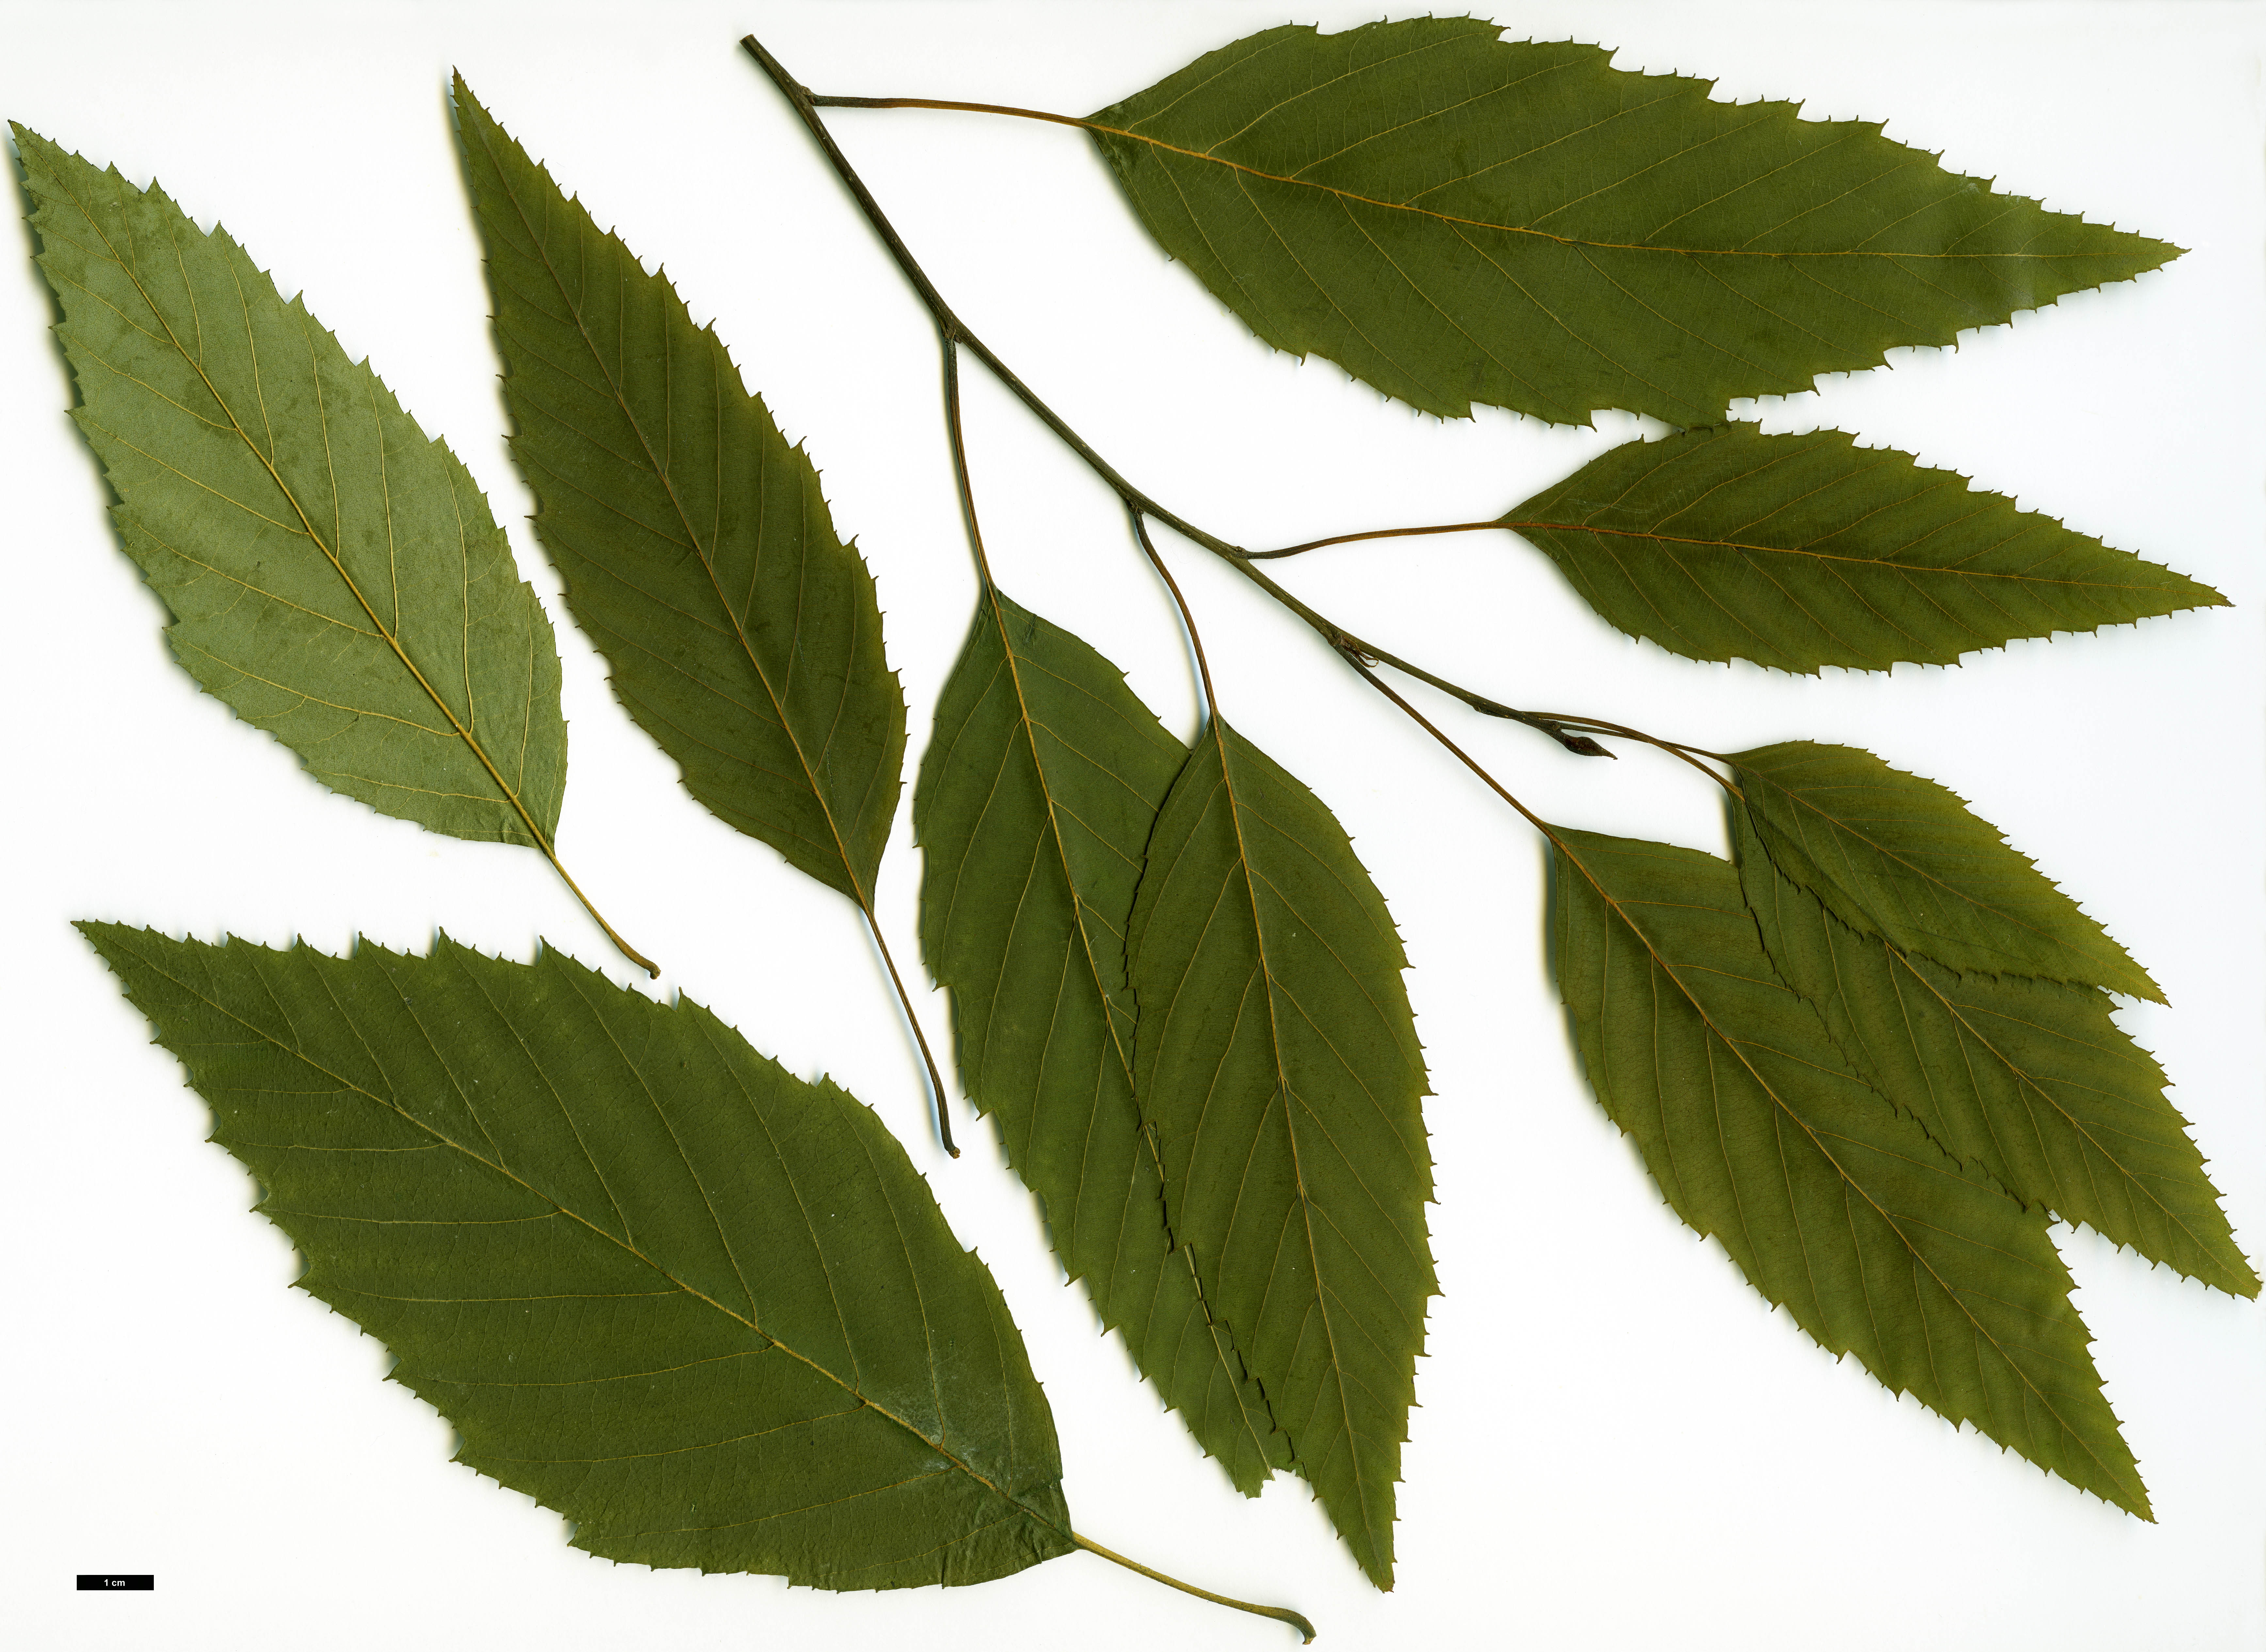 High resolution image: Family: Betulaceae - Genus: Alnus - Taxon: acuminata - SpeciesSub: subsp. glabrata